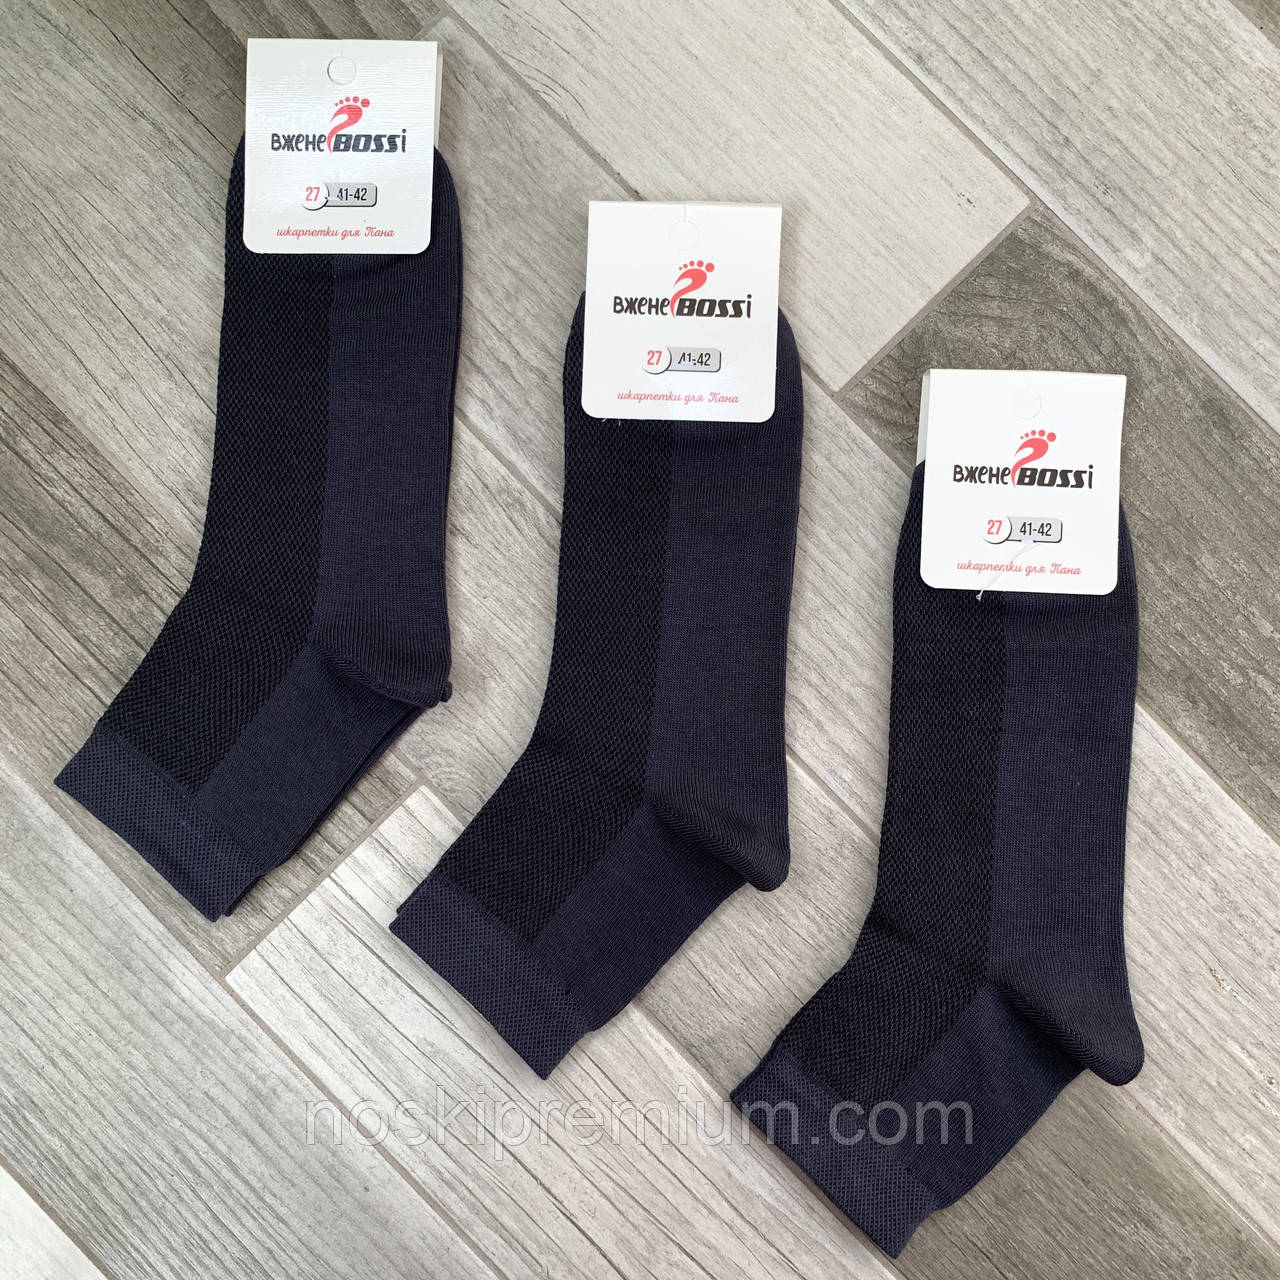 Шкарпетки чоловічі сітка бавовна середні ВженеBOSSі, розмір 27 (41-42), темно-сірі, 012050